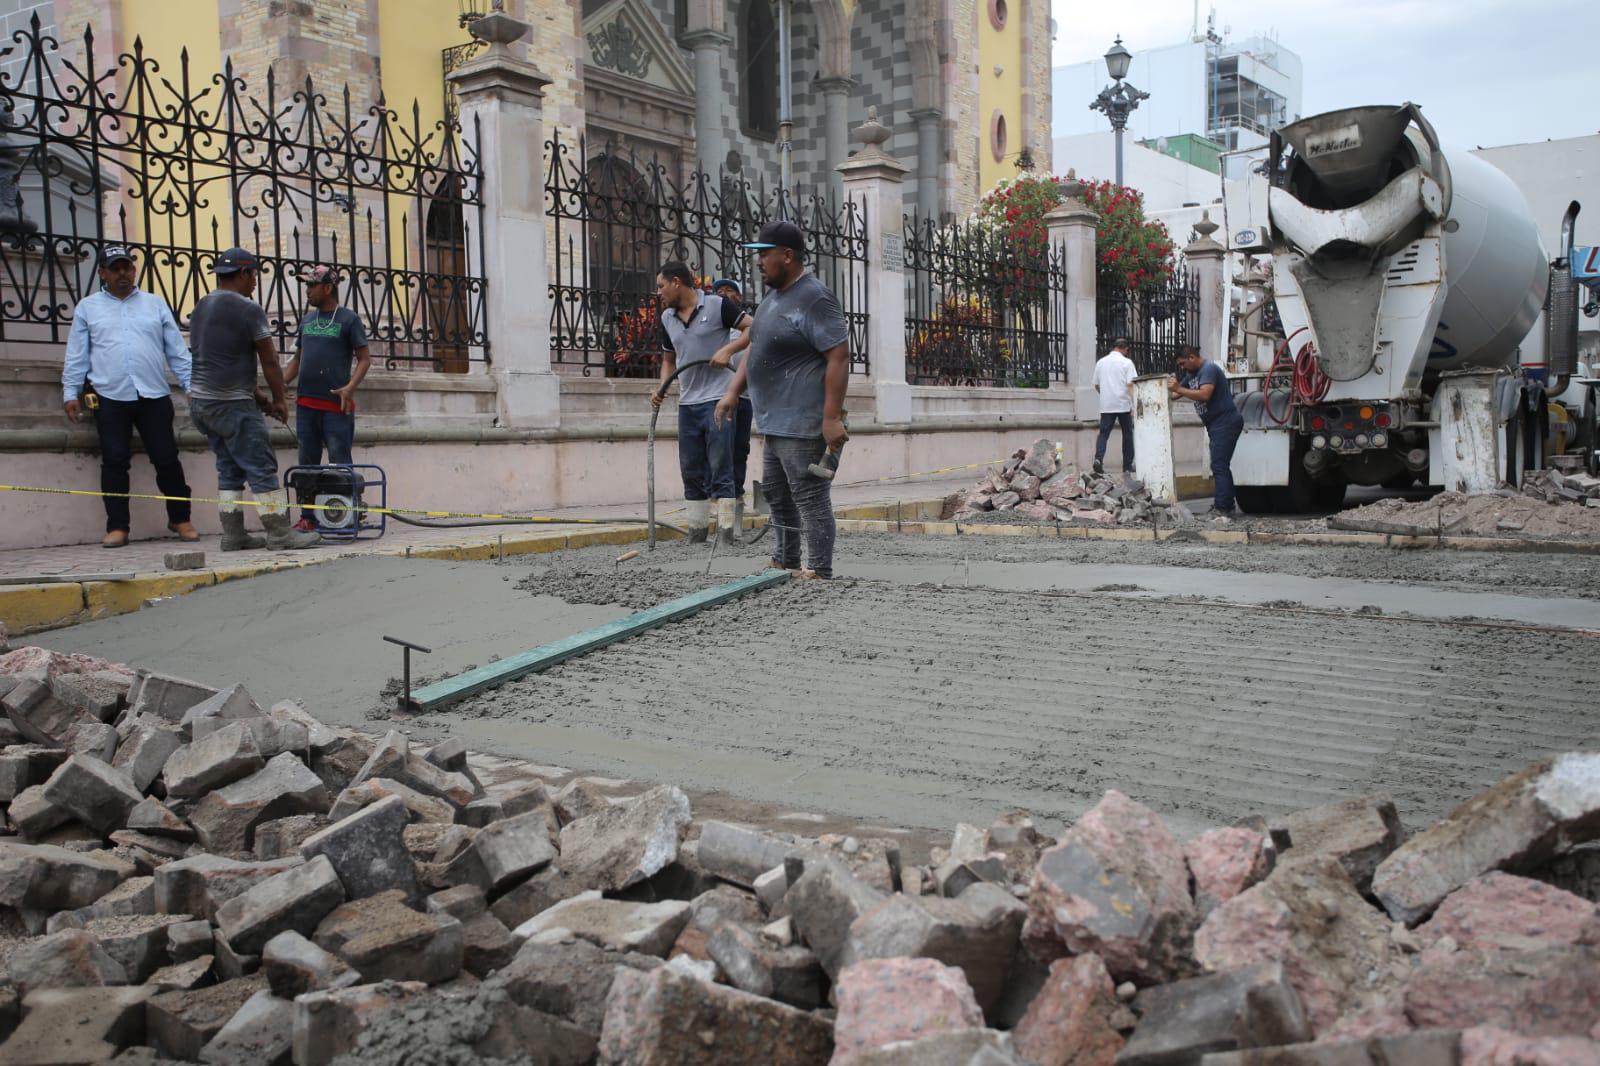 $!Construyen otro paso peatonal elevado en Mazatlán, ahora afuera de Catedral